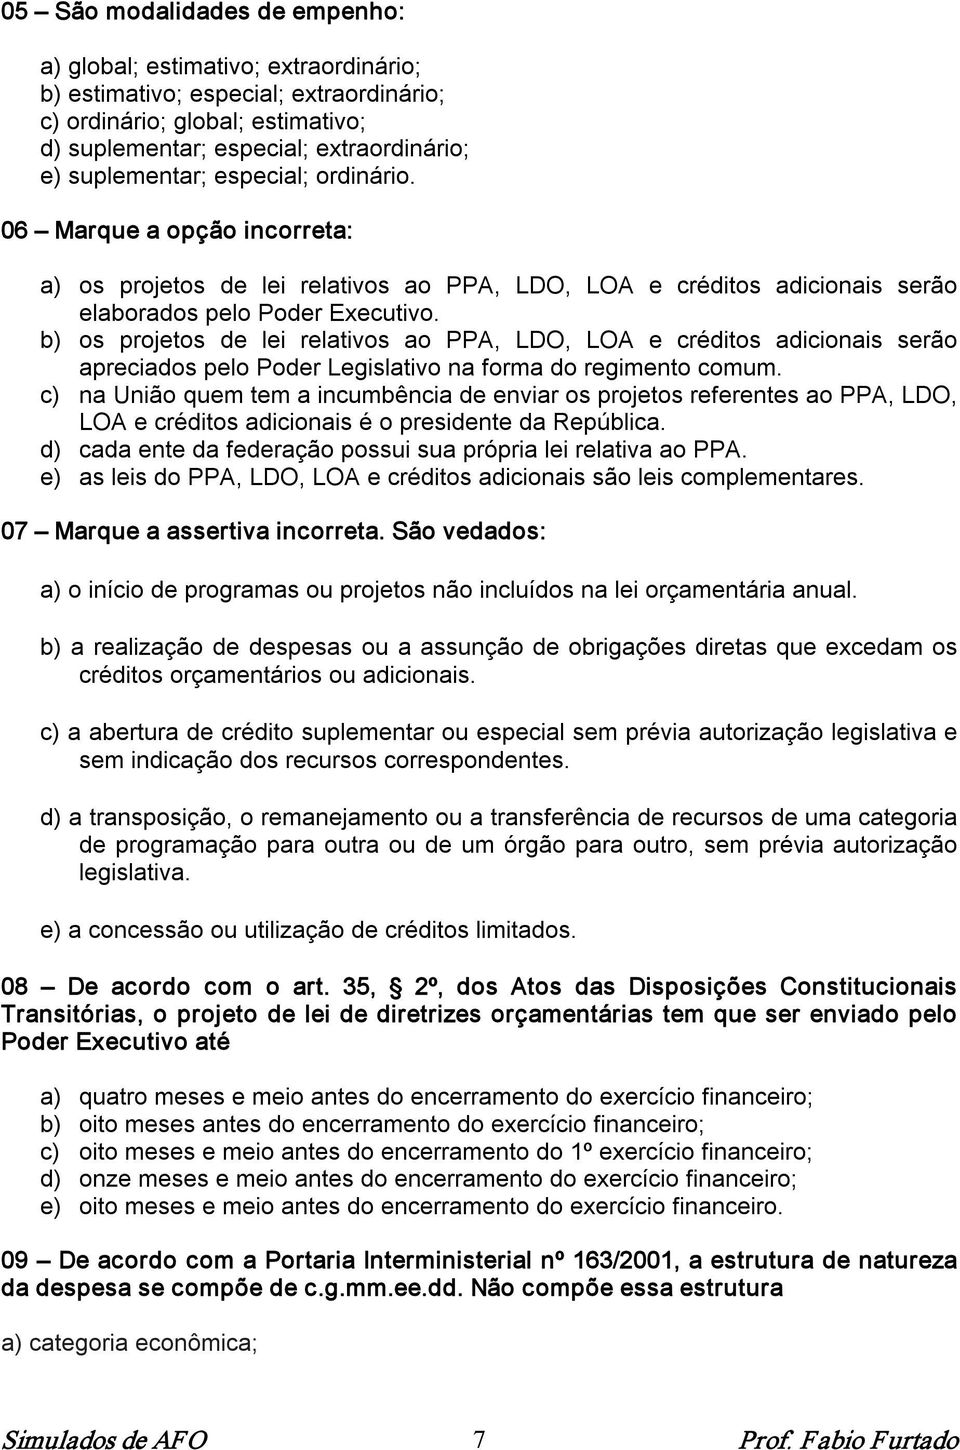 b) os projetos de lei relativos ao PPA, LDO, LOA e créditos adicionais serão apreciados pelo Poder Legislativo na forma do regimento comum.